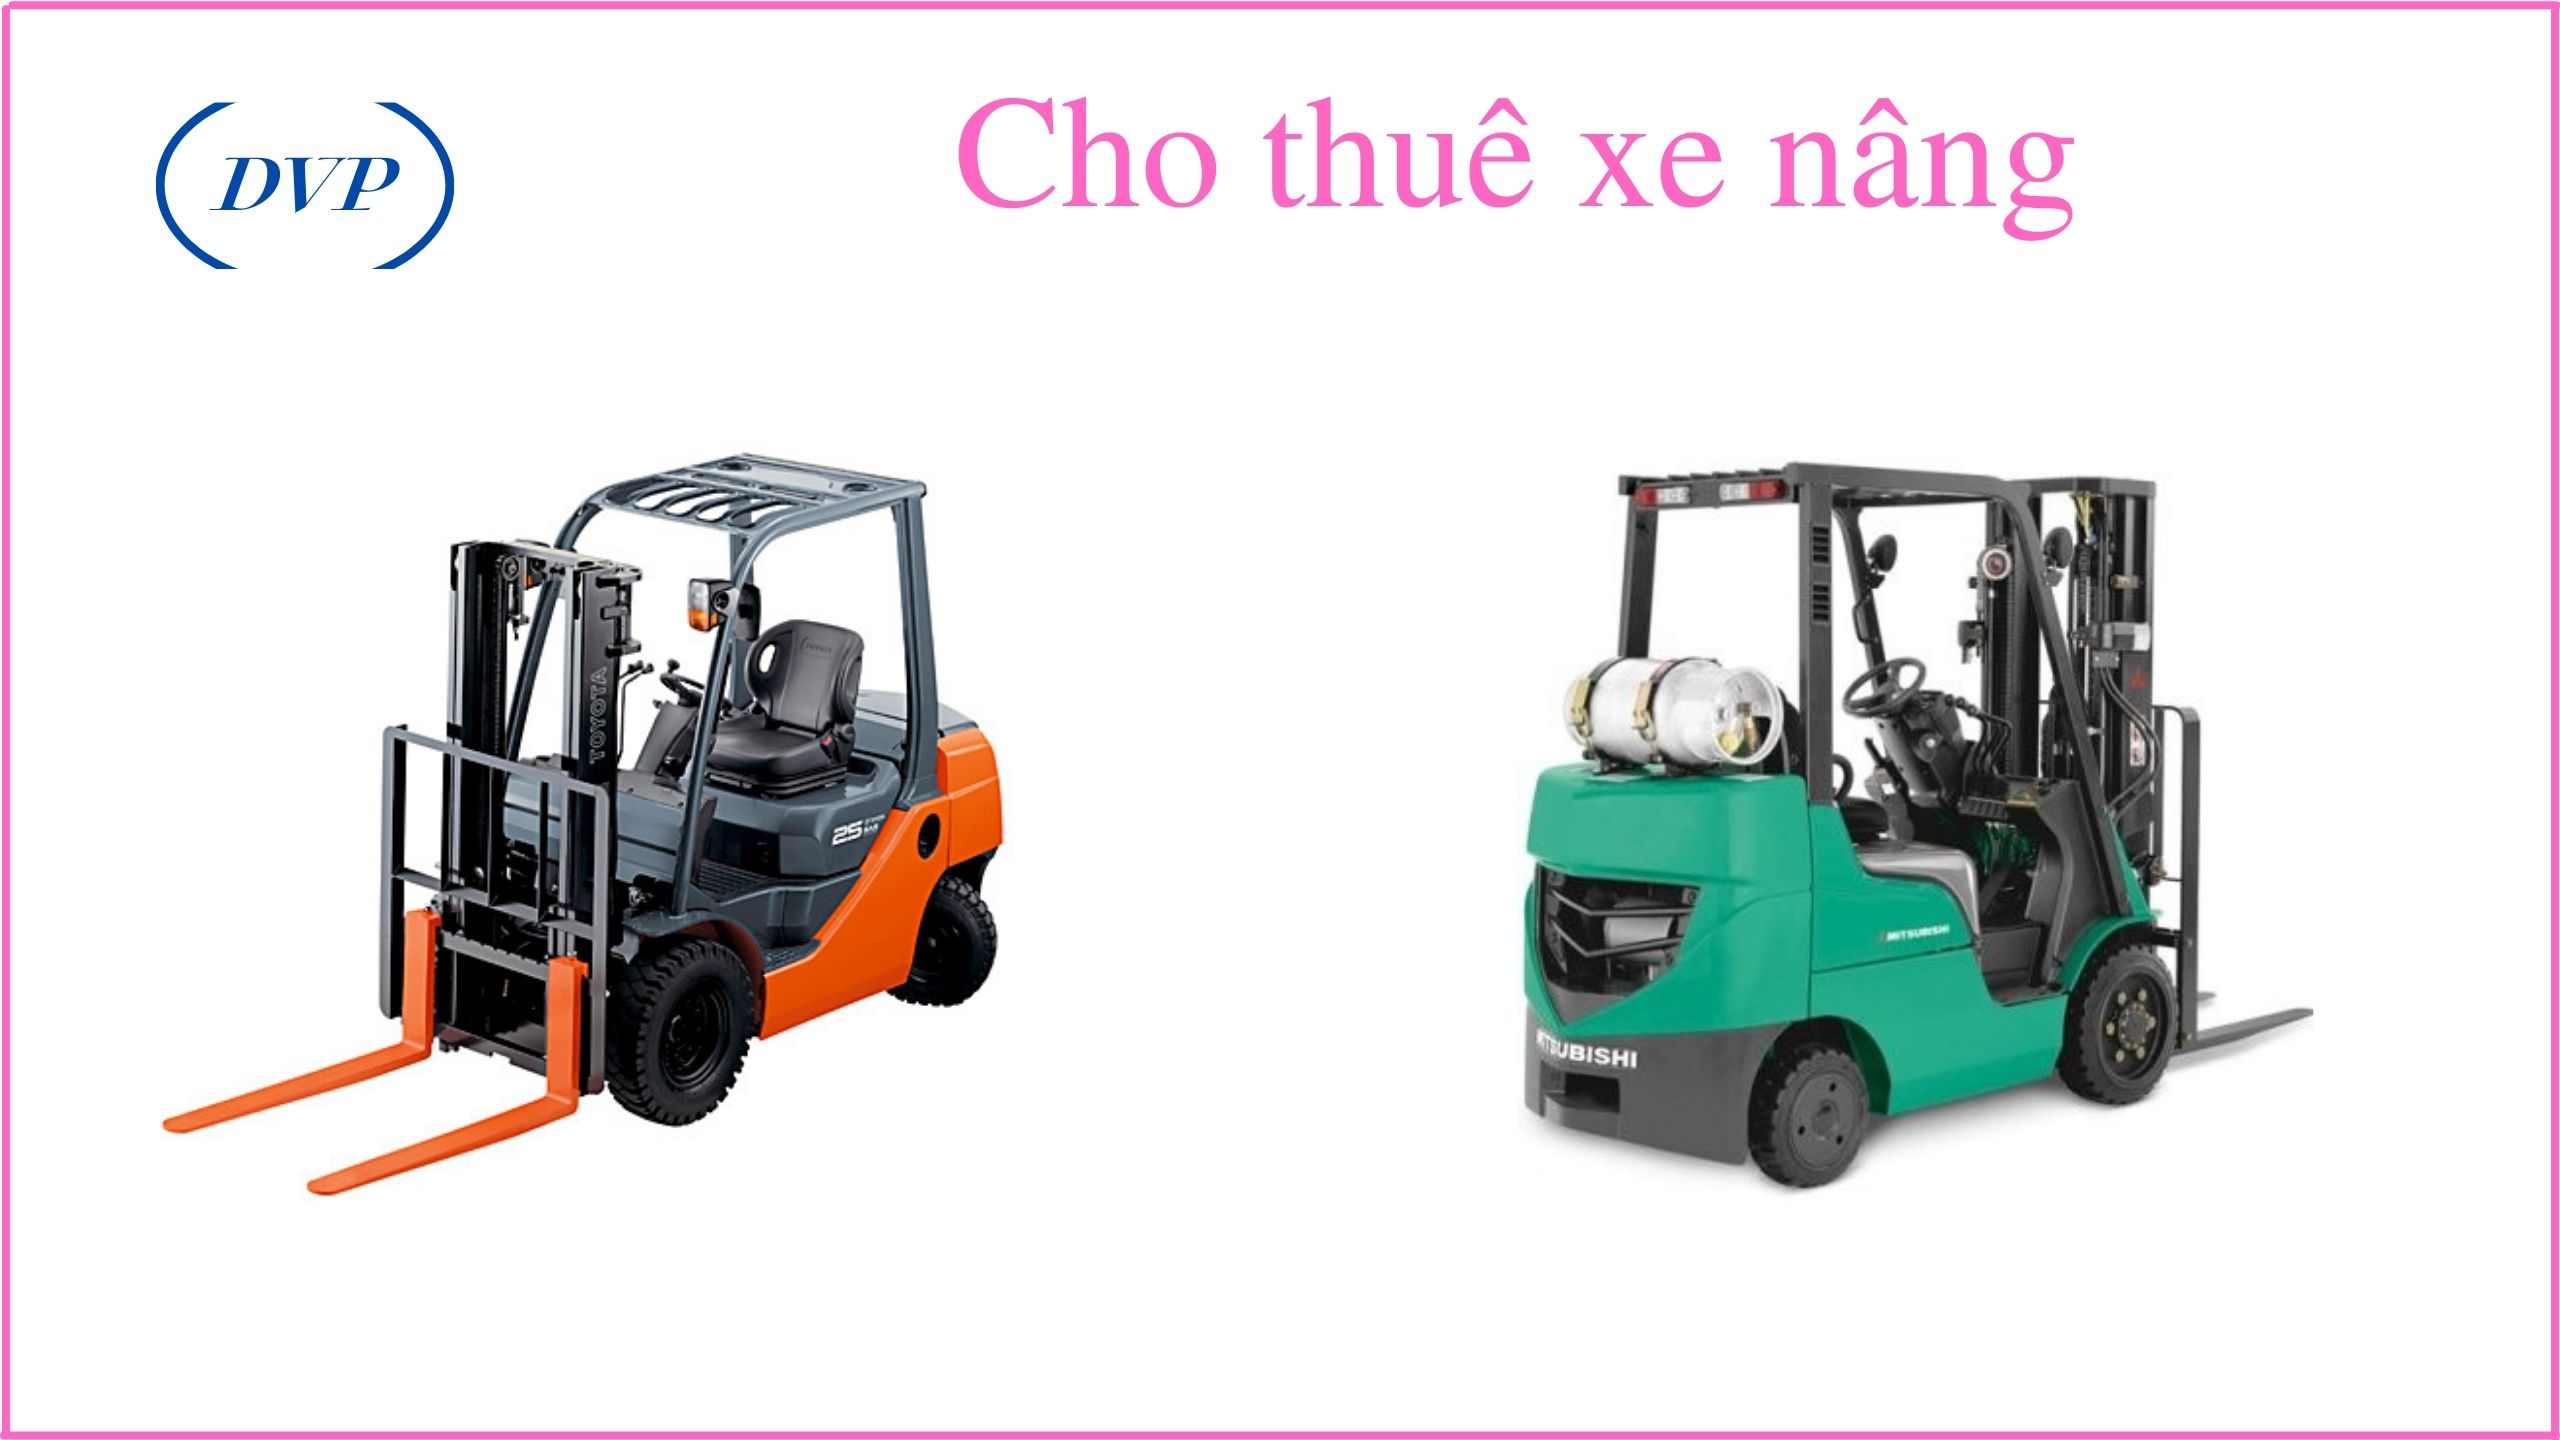 Cho thue xe nang ban xe nang tay sua chua xe nang tay vo xe nang Binh Duong Tphcm Dong nai Binh Phuoc Tay Ninh Long An Tien Giang Can tho 8